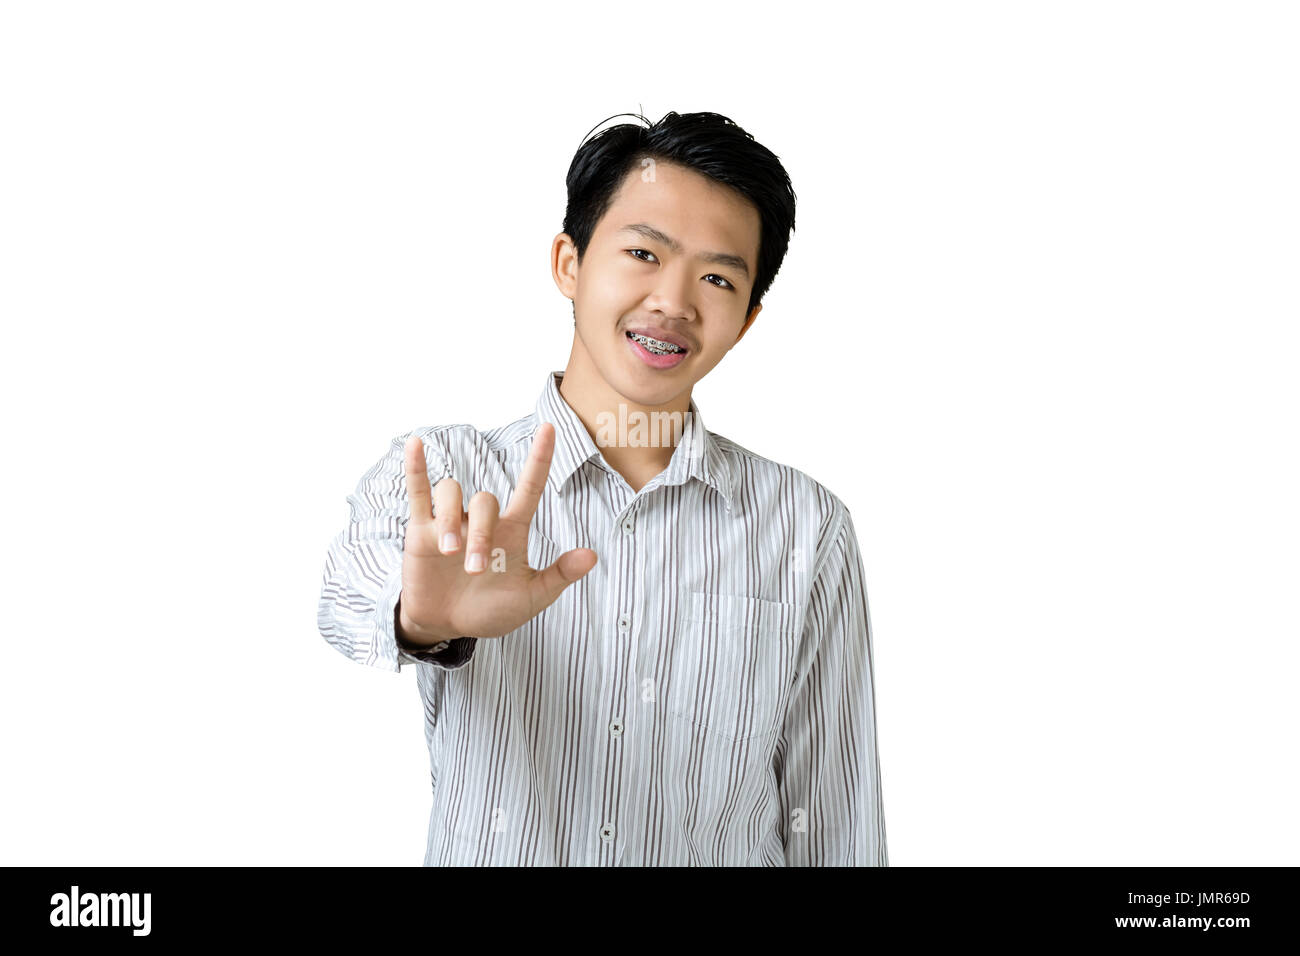 Porträt eines jungen asiatischen Geschäftsmann zeigen, ich liebe dich Handzeichen. Isoliert auf weißem Hintergrund mit textfreiraum und Clipping-Pfad Stockfoto